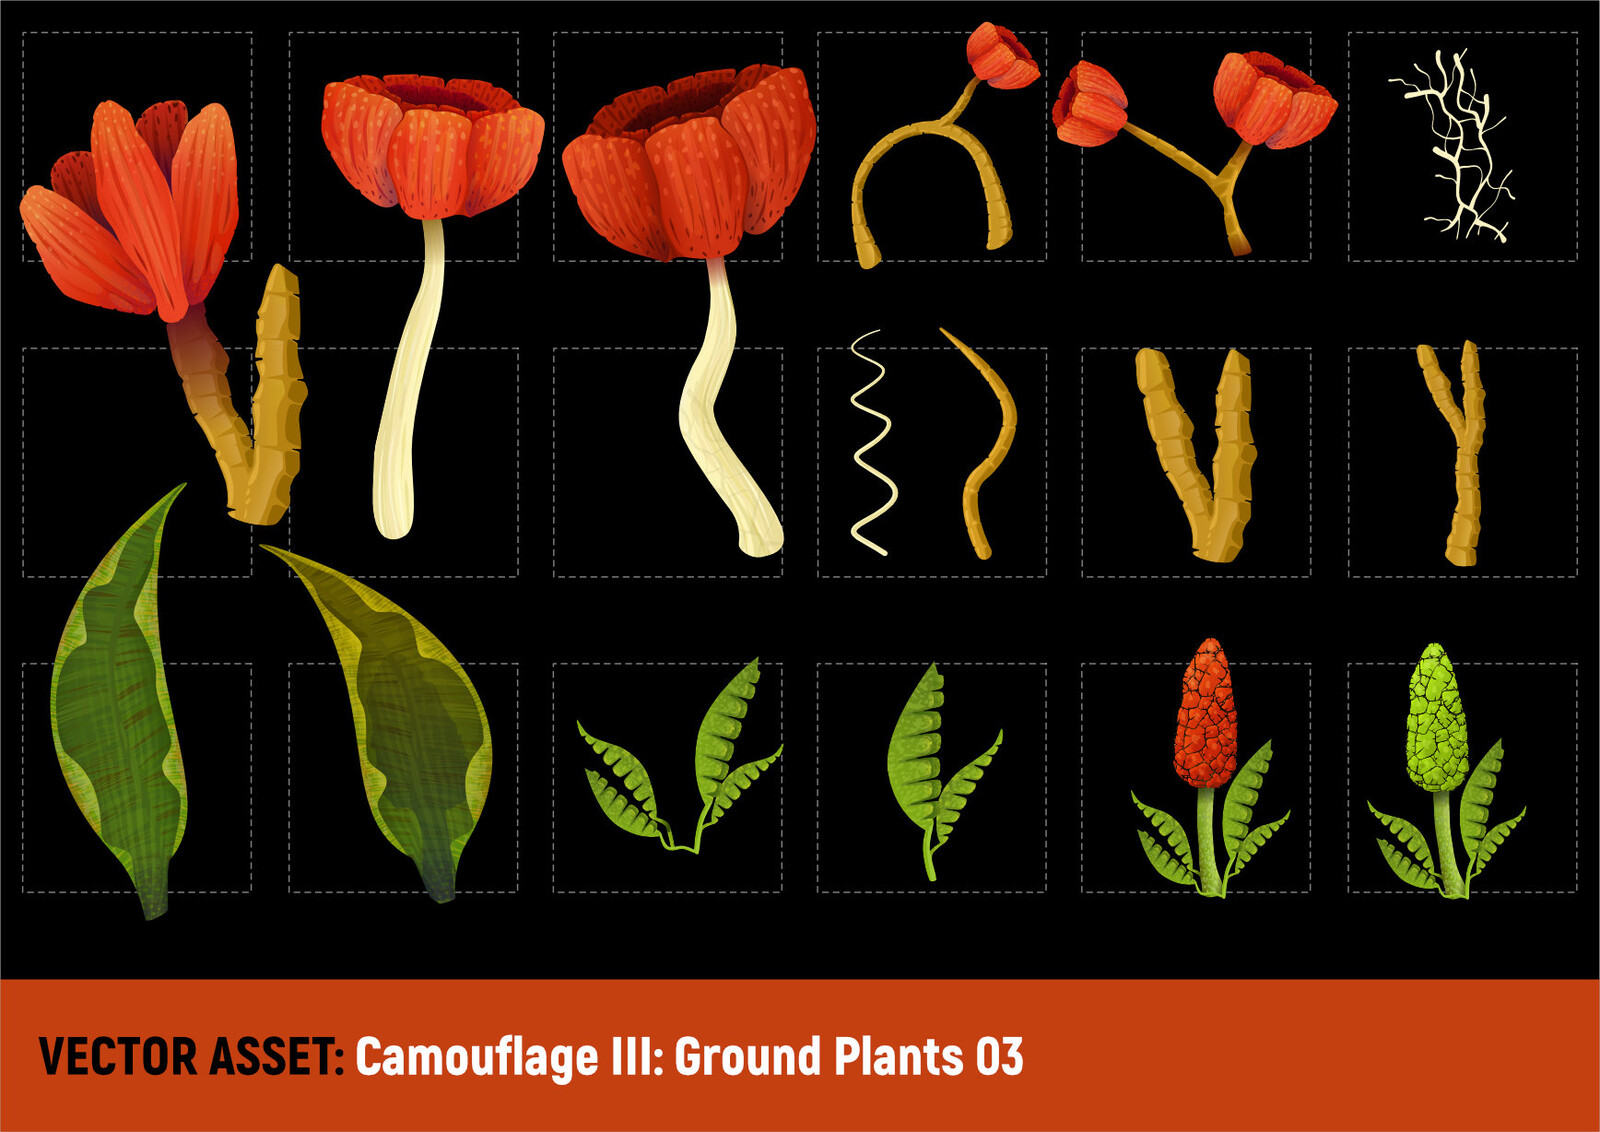 Camouflage III: Ground Plants 03